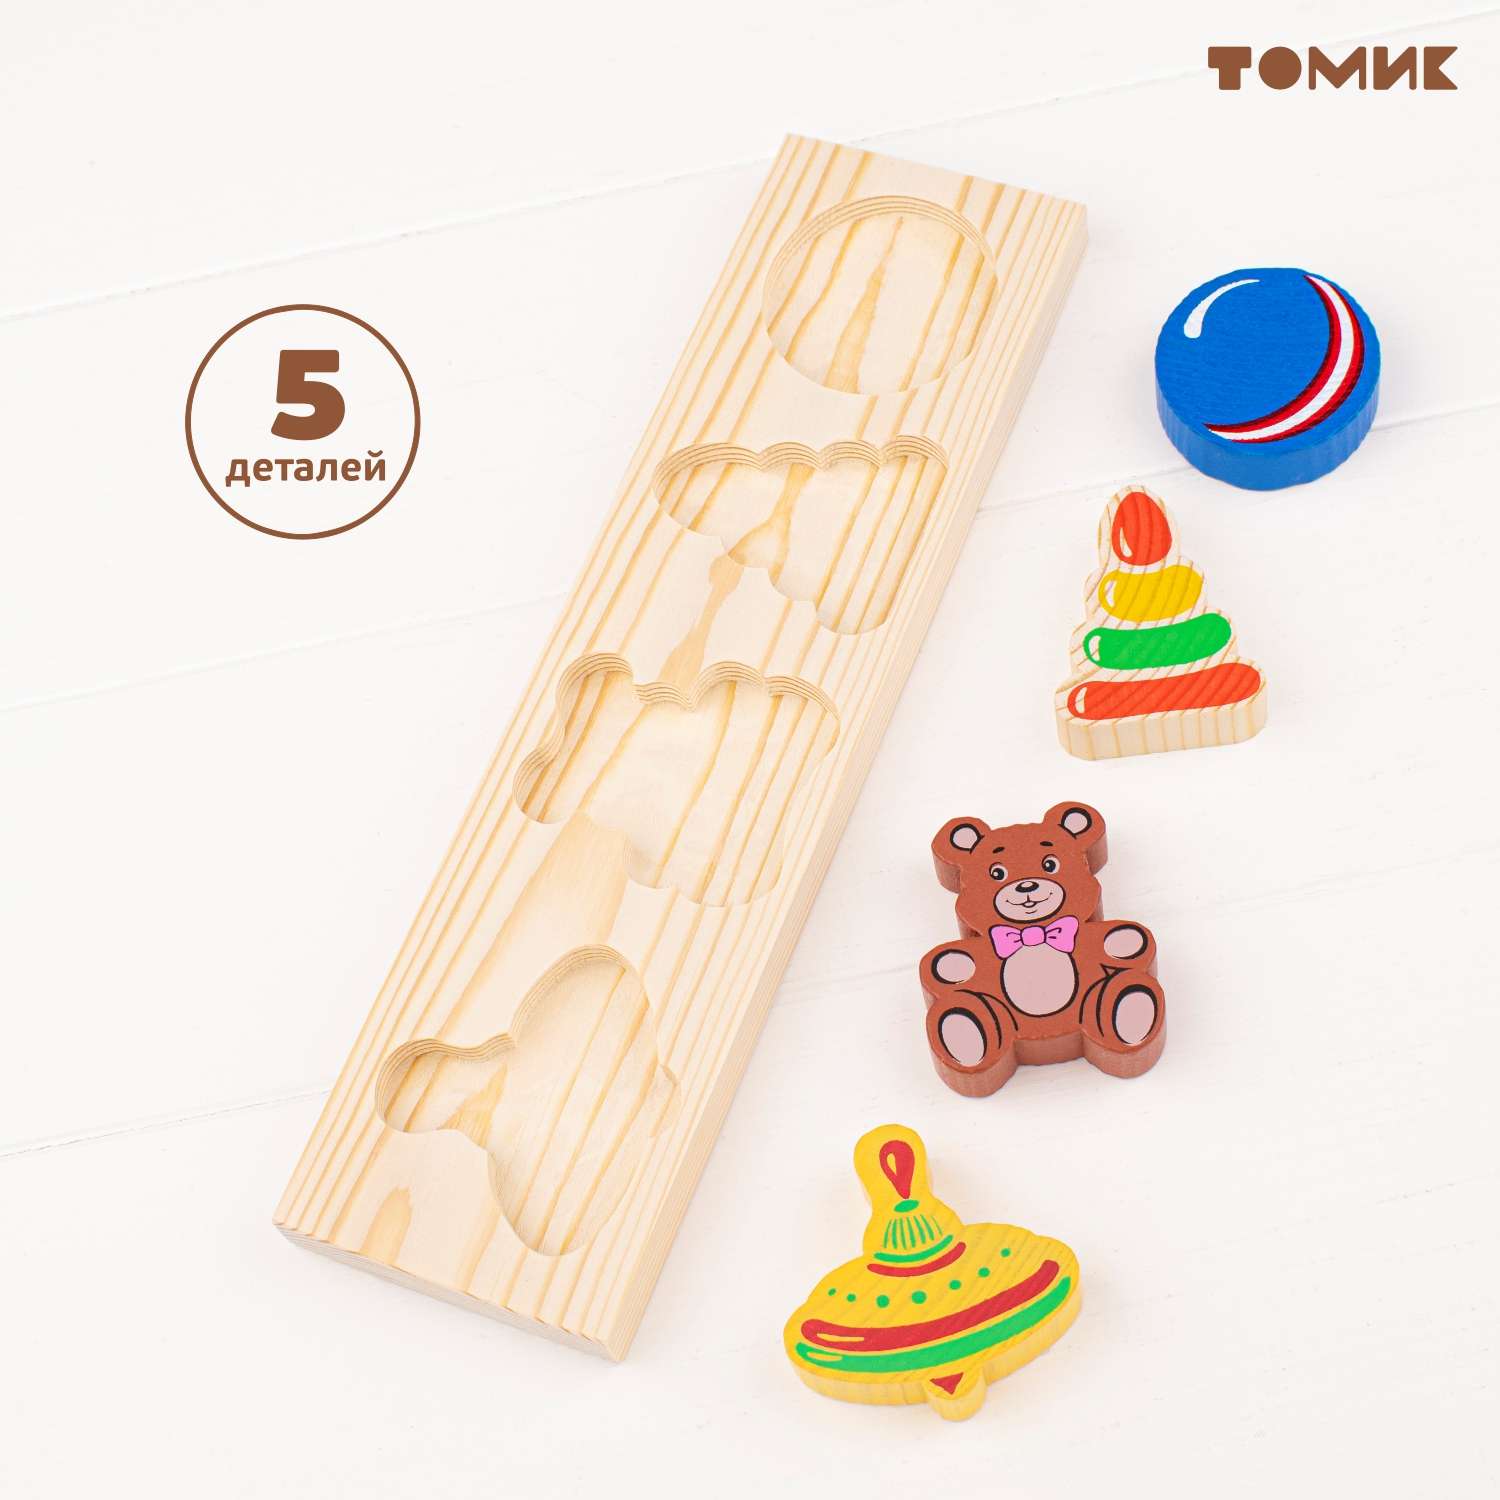 Рамка-Вкладыш Томик Игрушки 5 деталей 451 развивающая деревянная игрушка - фото 7